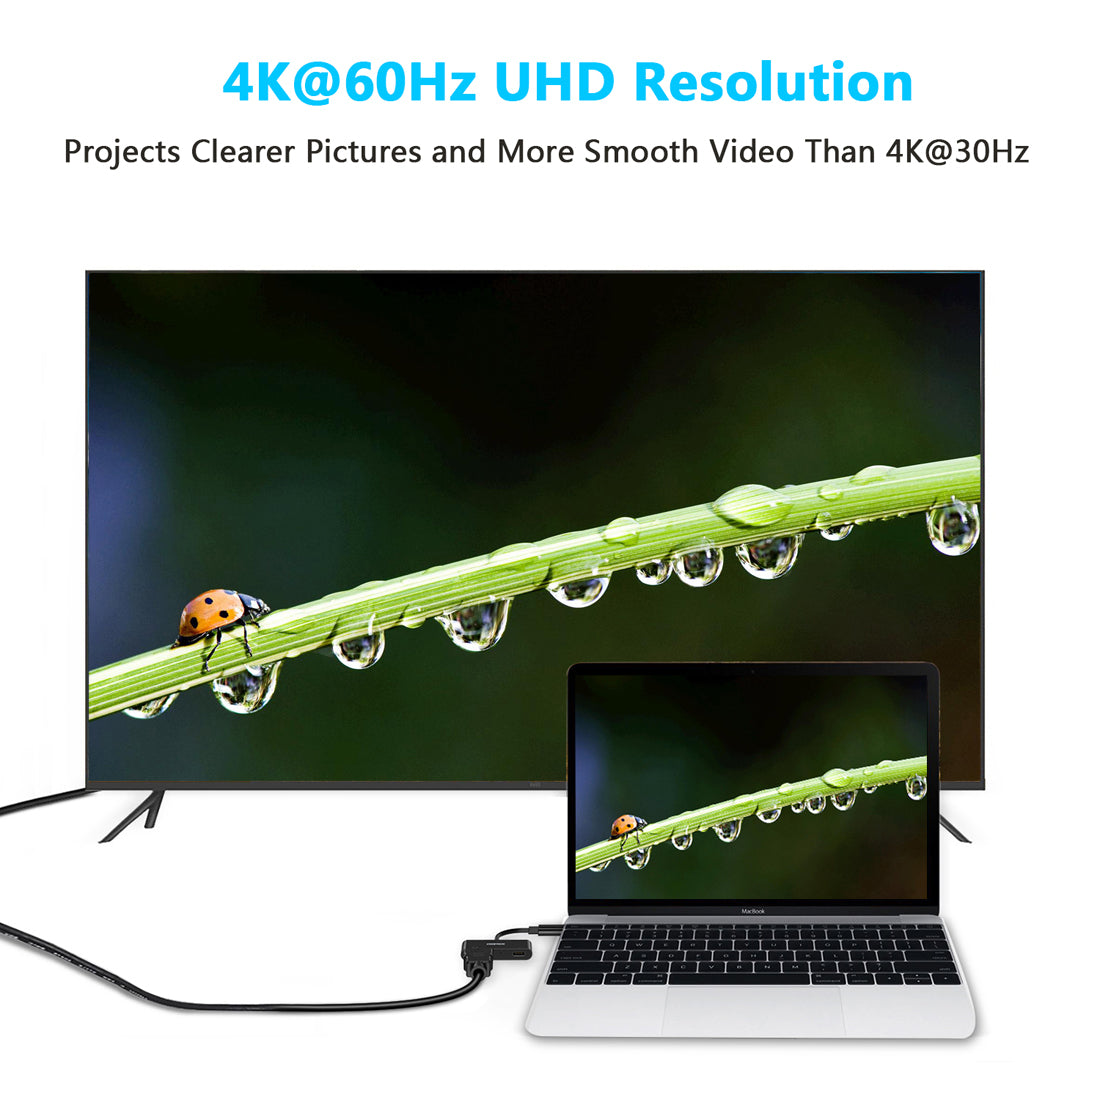 HUB-M03 CHOETECH Adaptateur USB C vers HDMI (4K @ 60 Hz), adaptateur USB Type-C HDMI femelle avec port de charge 60 W PD Thunderbolt 3 compatible avec MacBook Pro/iPad Pro/MacBook Air 2018, Surface Book 2, Dell XPS 13/15